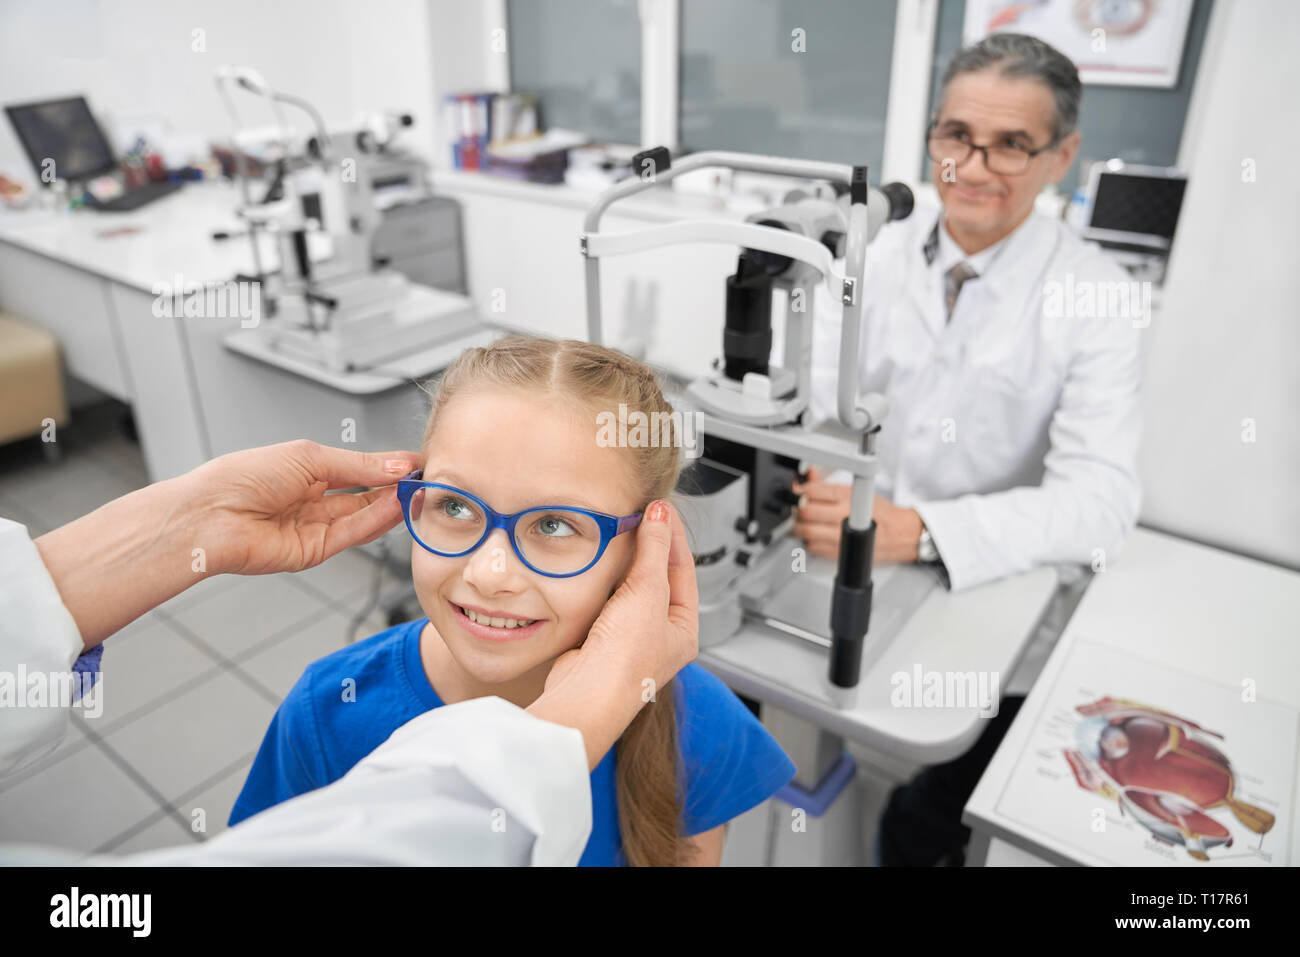 Mains de médecin portant des lunettes bleu sur patient. Cute girl smiling. Optométriste professionnel travaillant à table avec équipement médical spécial pour l'examen de la vue dans la salle médicale de la clinique. Banque D'Images